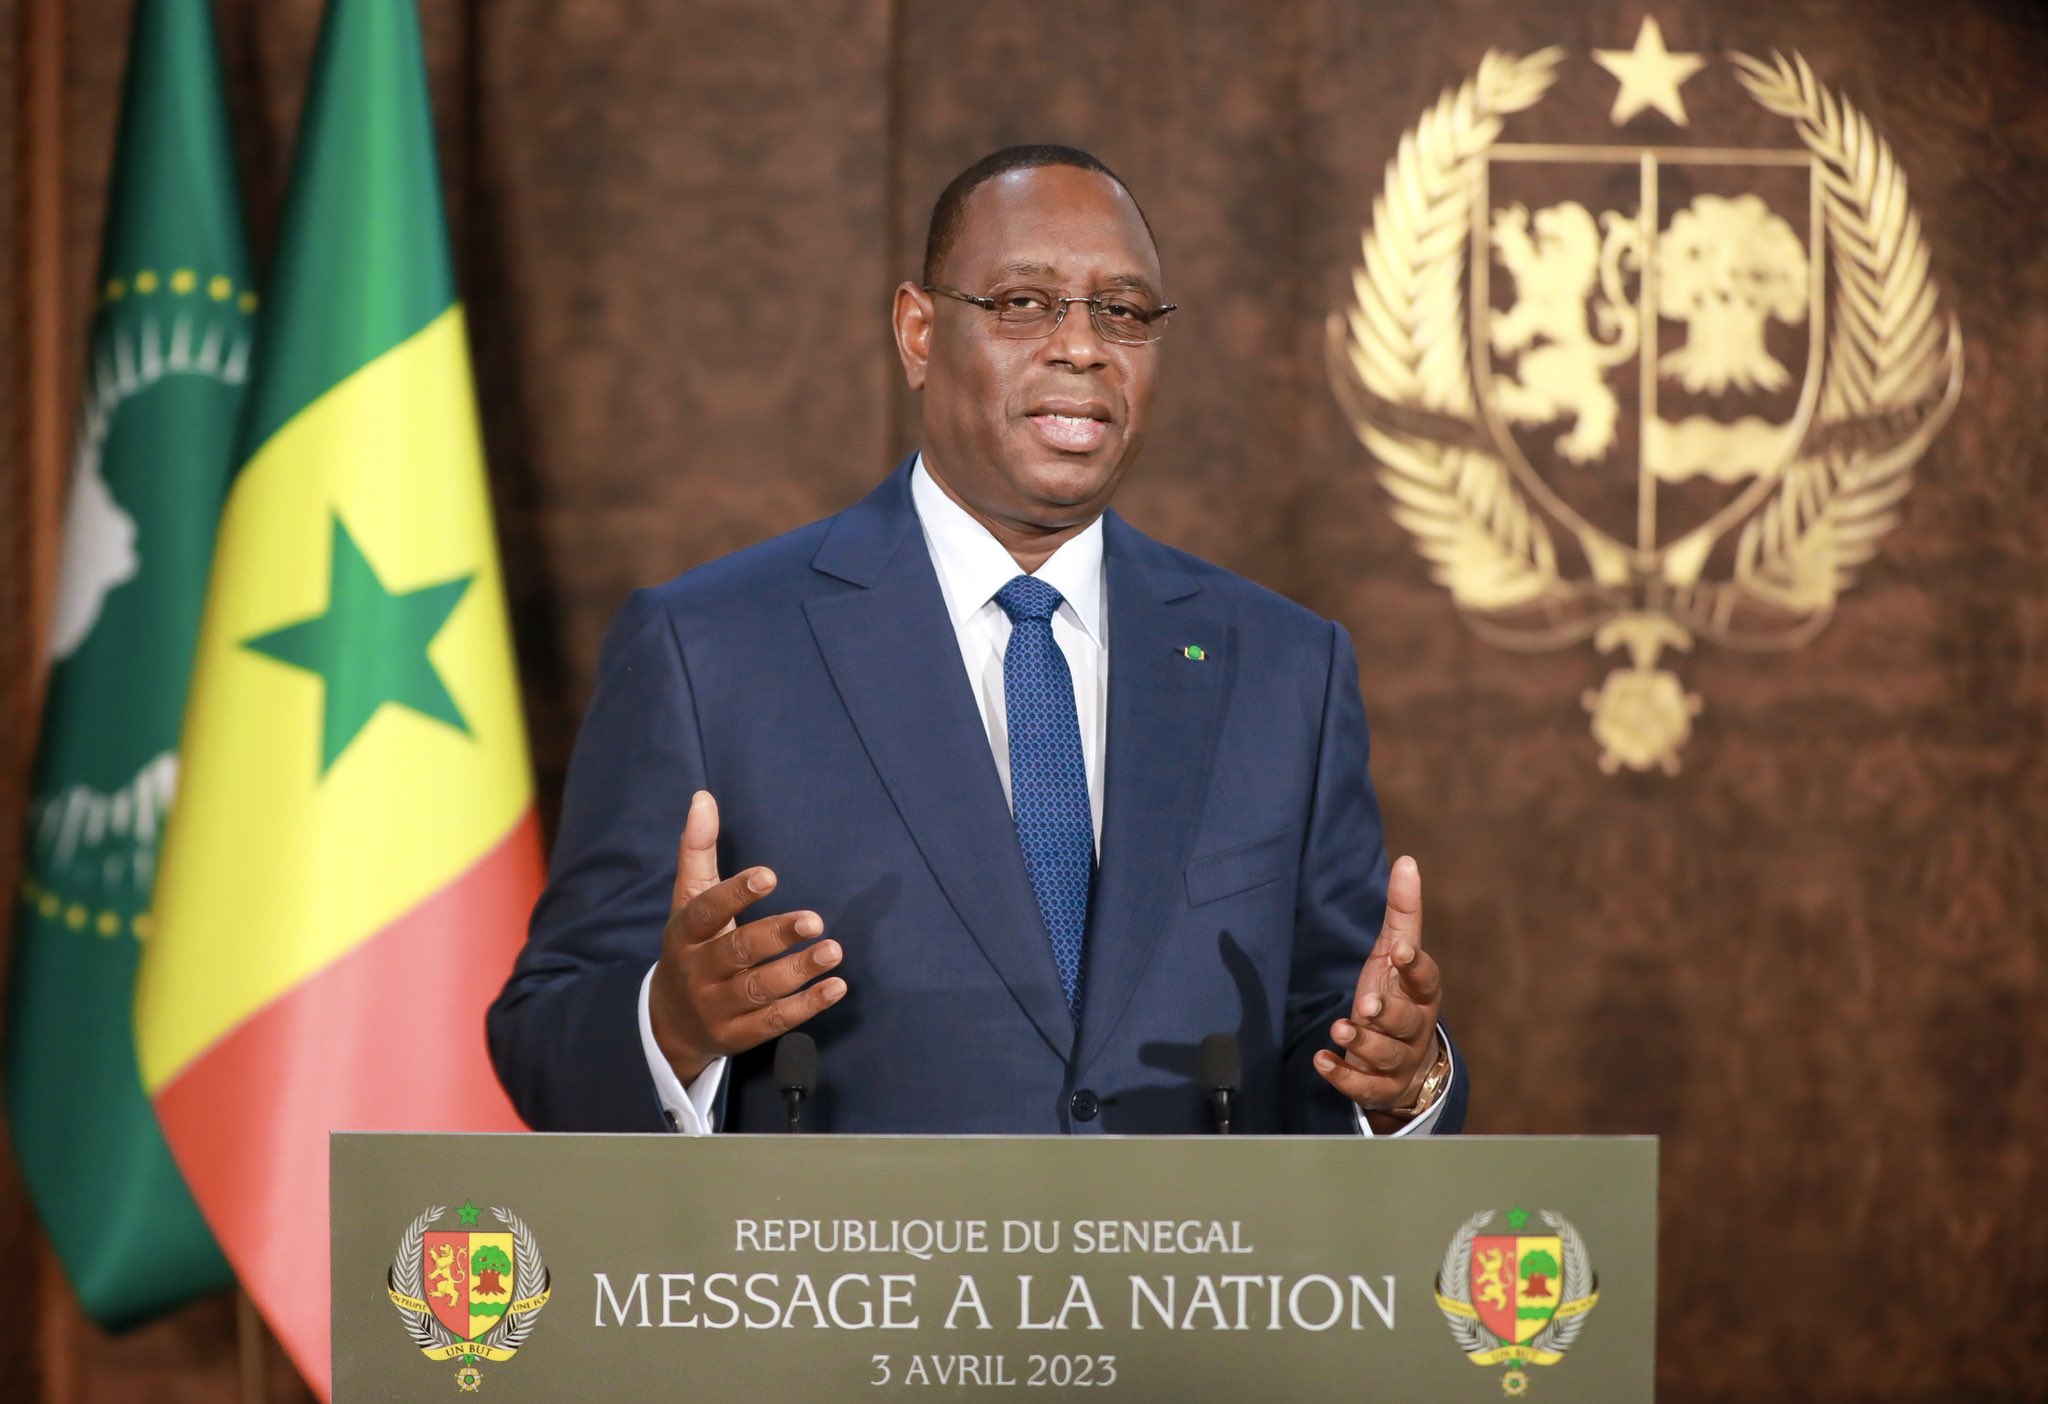 Message à la nation : Macky Sall rend hommage aux Sénégalais et vante ses réalisations